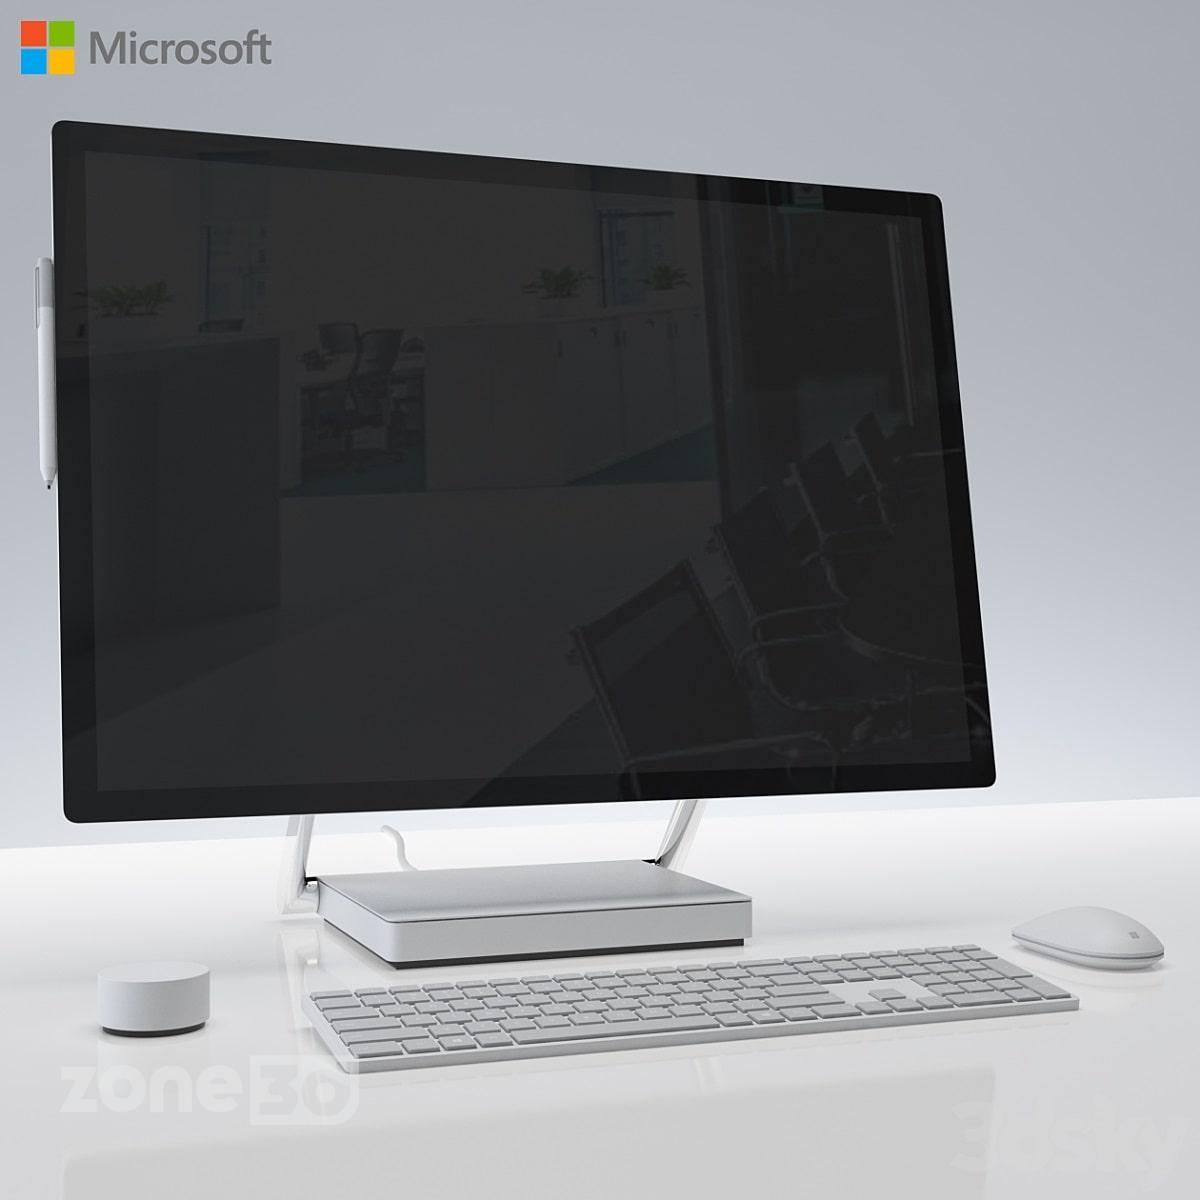 آبجکت مانیتور به همراه کیبورد و ماوس مدرن به همراه قلم نوری مدل Surface Studio